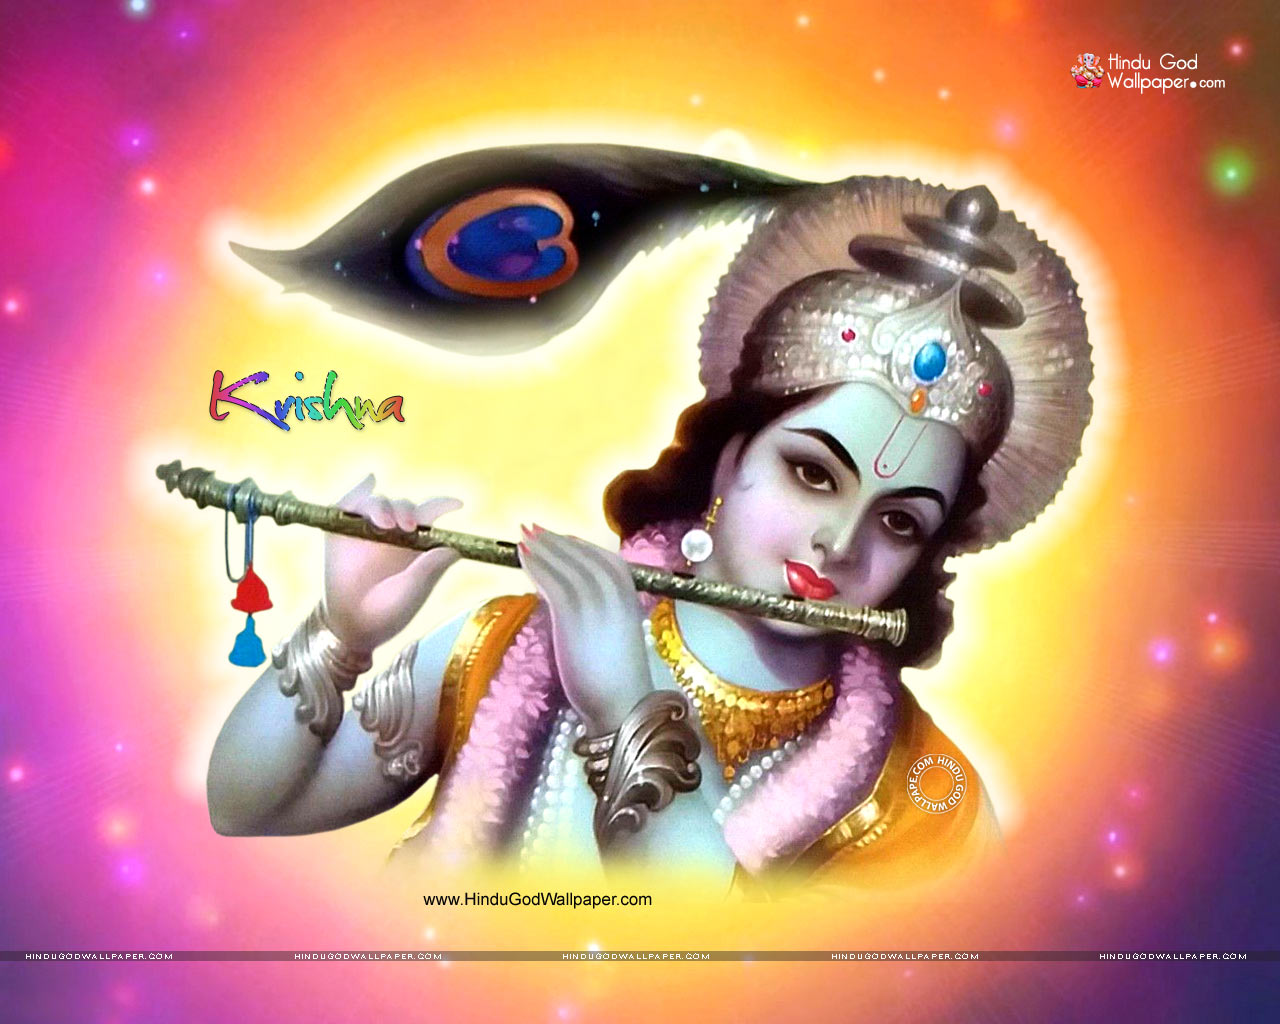 Hindu God Krishna Wallpaper Free Download - HD Wallpaper 